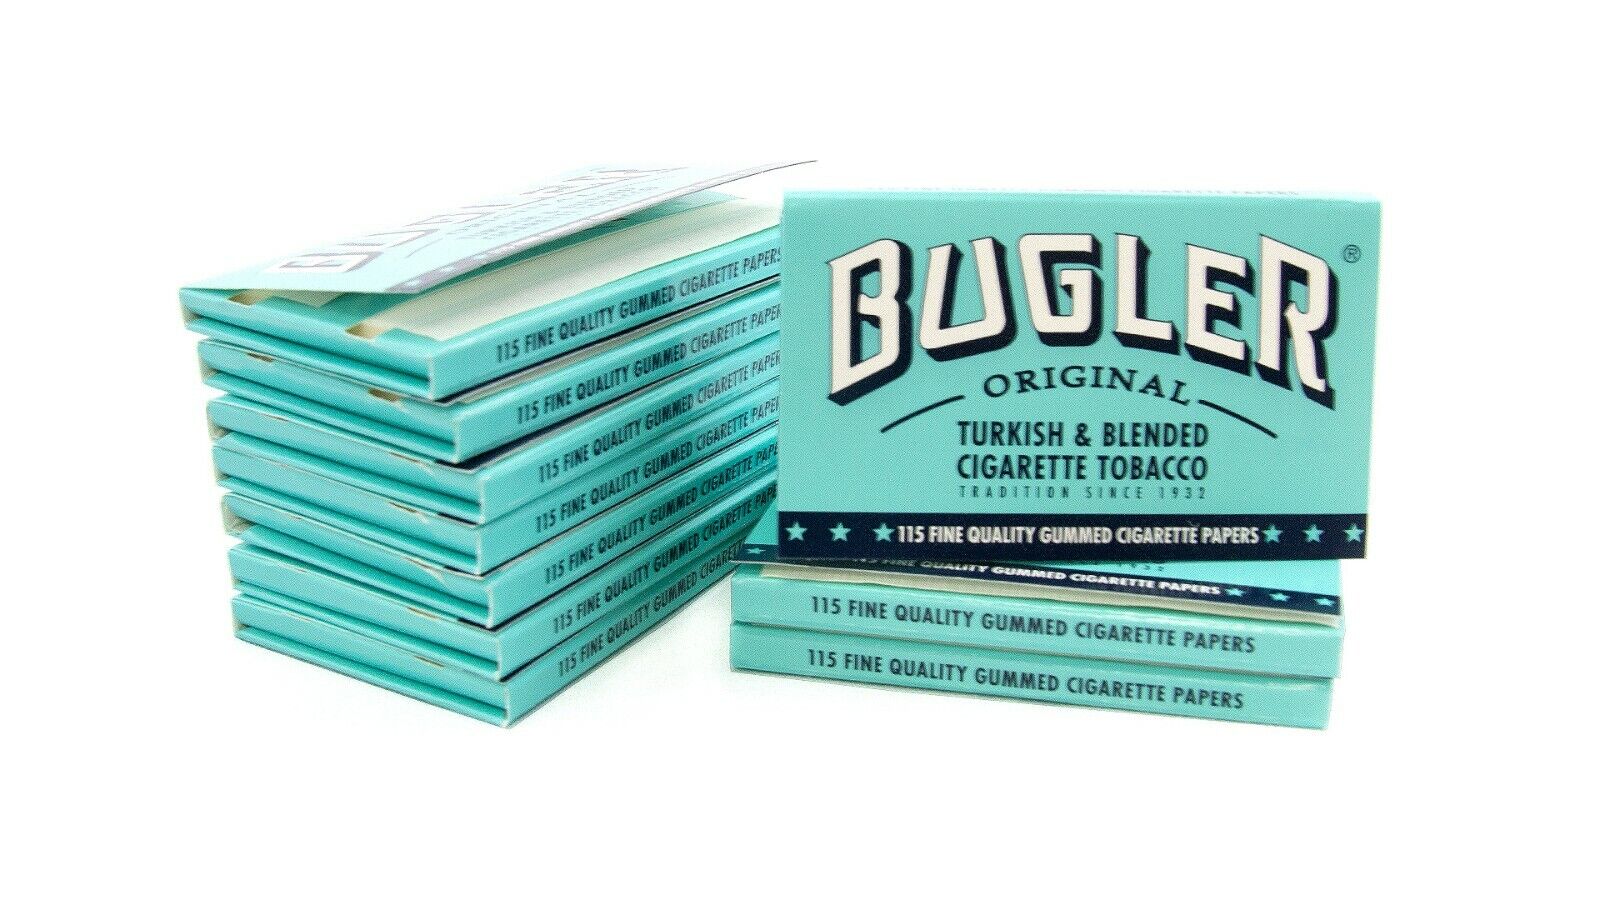 Bugler Original Turkish Blended 115 Gummed Cigarette Tobacco Papers (10 Packs)